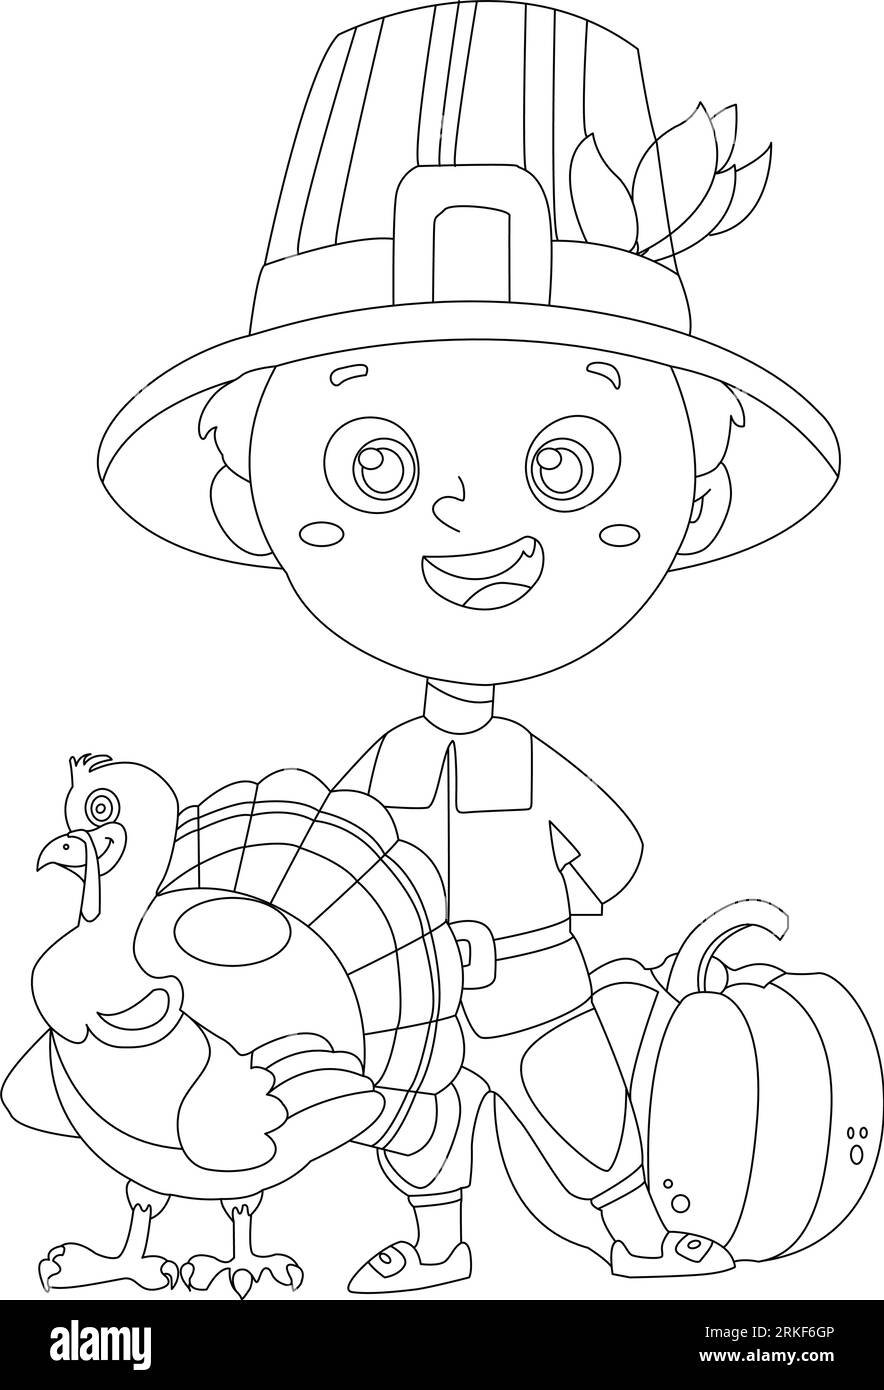 Zeitlos vielen Dank: Thanksgiving Line Art and Vector Illustration für alle Altersgruppen zum Genießen. Malbuch-Seite. Stock Vektor